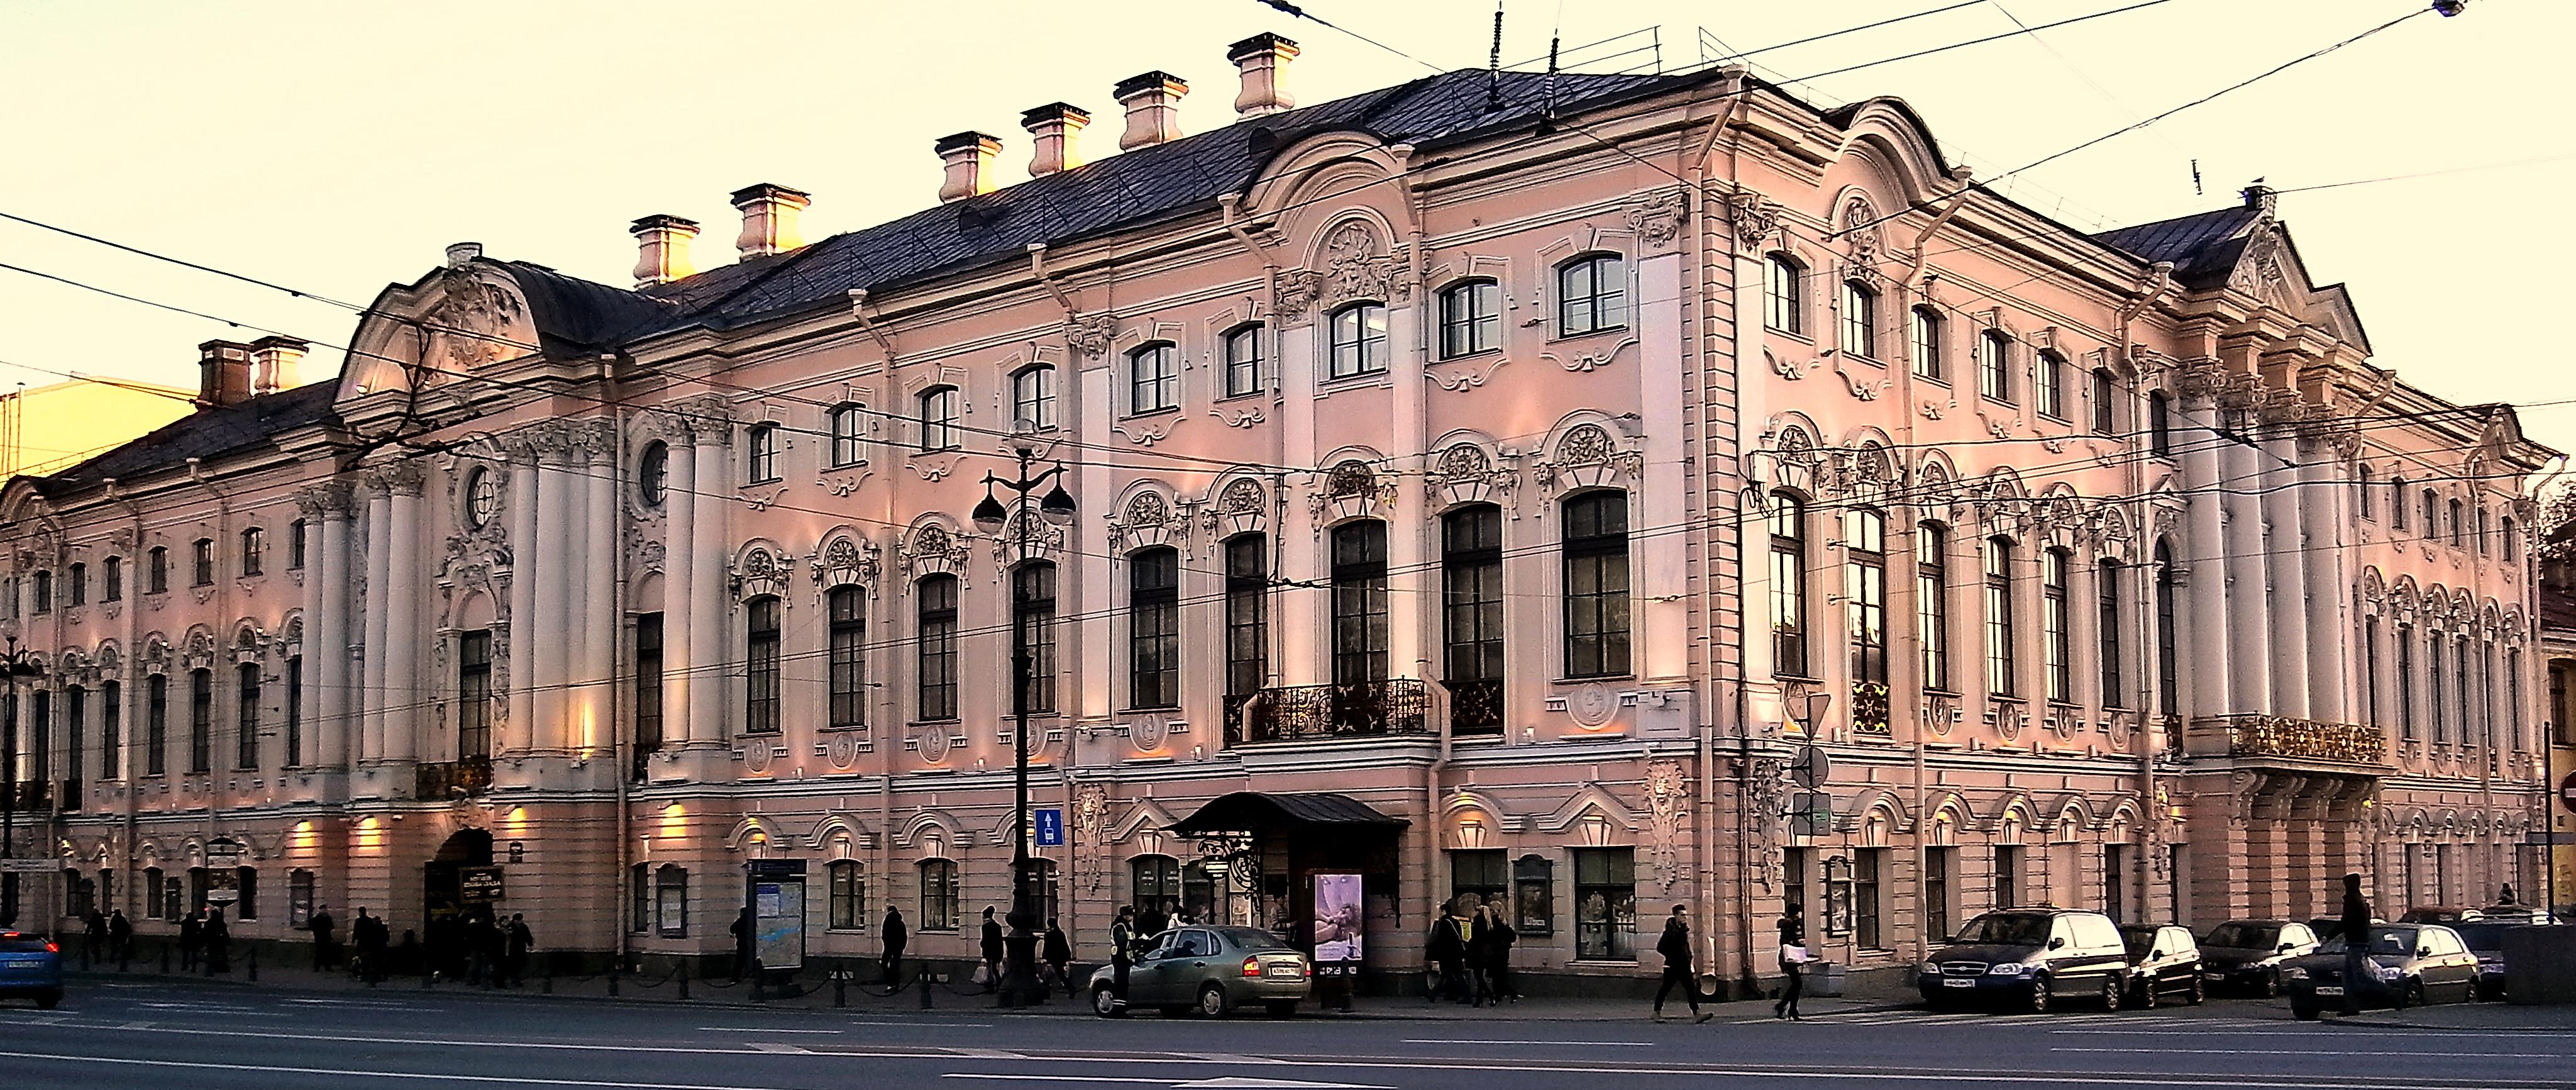 Санкт-Петербург - Строгановский дворец | Турнавигатор